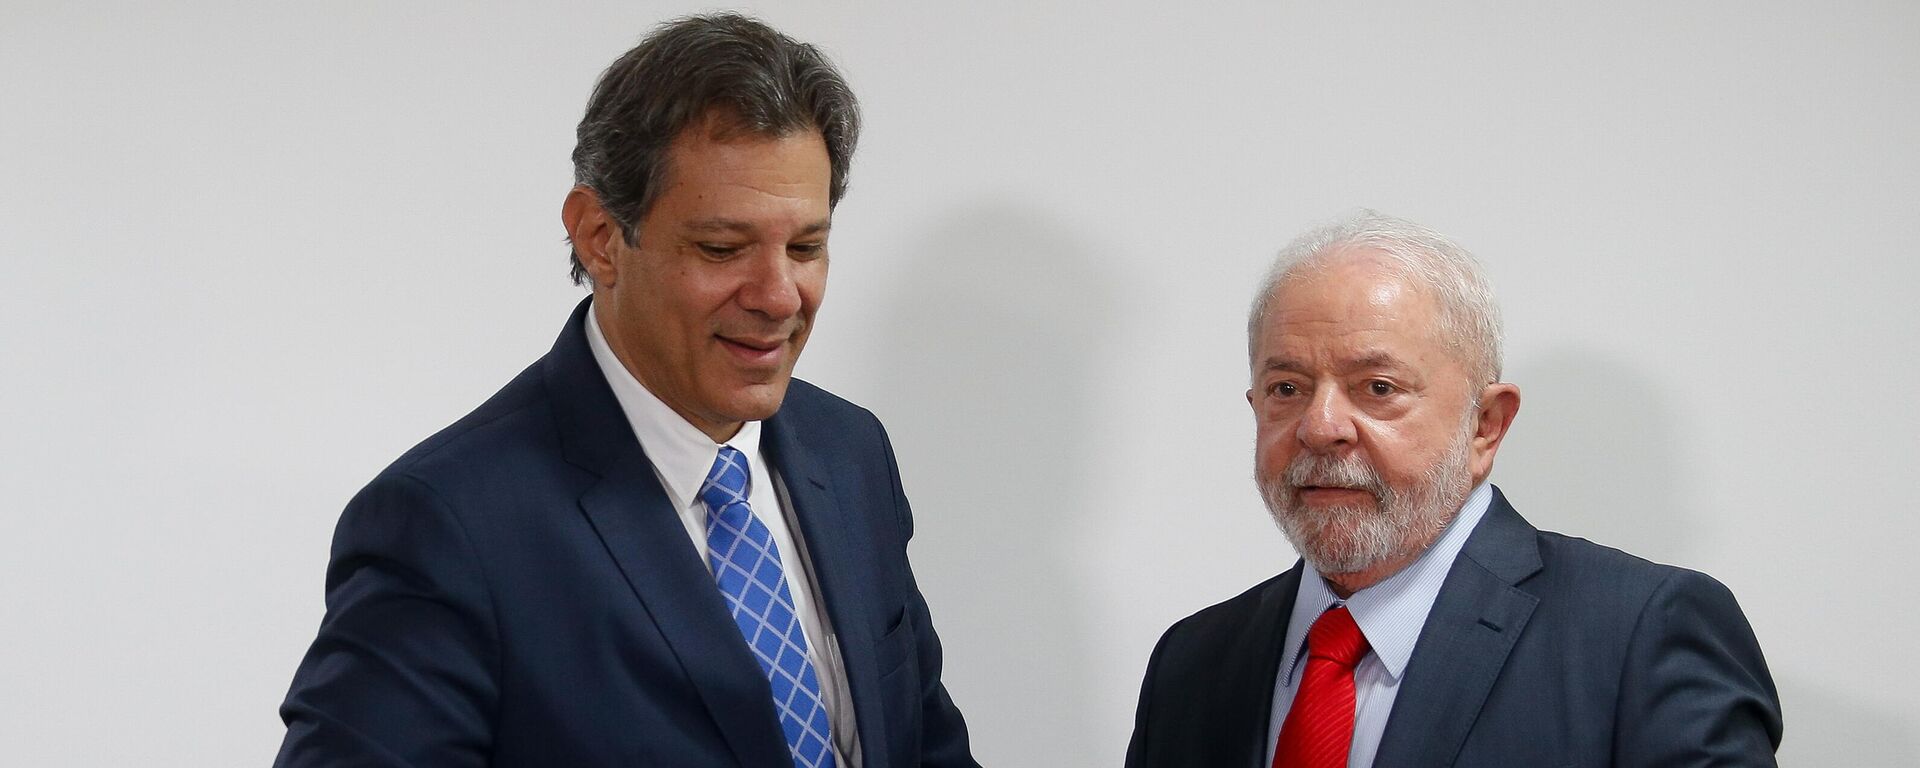 O presidente Lula e o ministro da Fazenda, Fernando Haddad (PT), durante assinatura de medidas econômicas no gabinete do Palácio do Planalto. Brasília, 13 de janeiro de 2023 - Sputnik Brasil, 1920, 19.12.2023